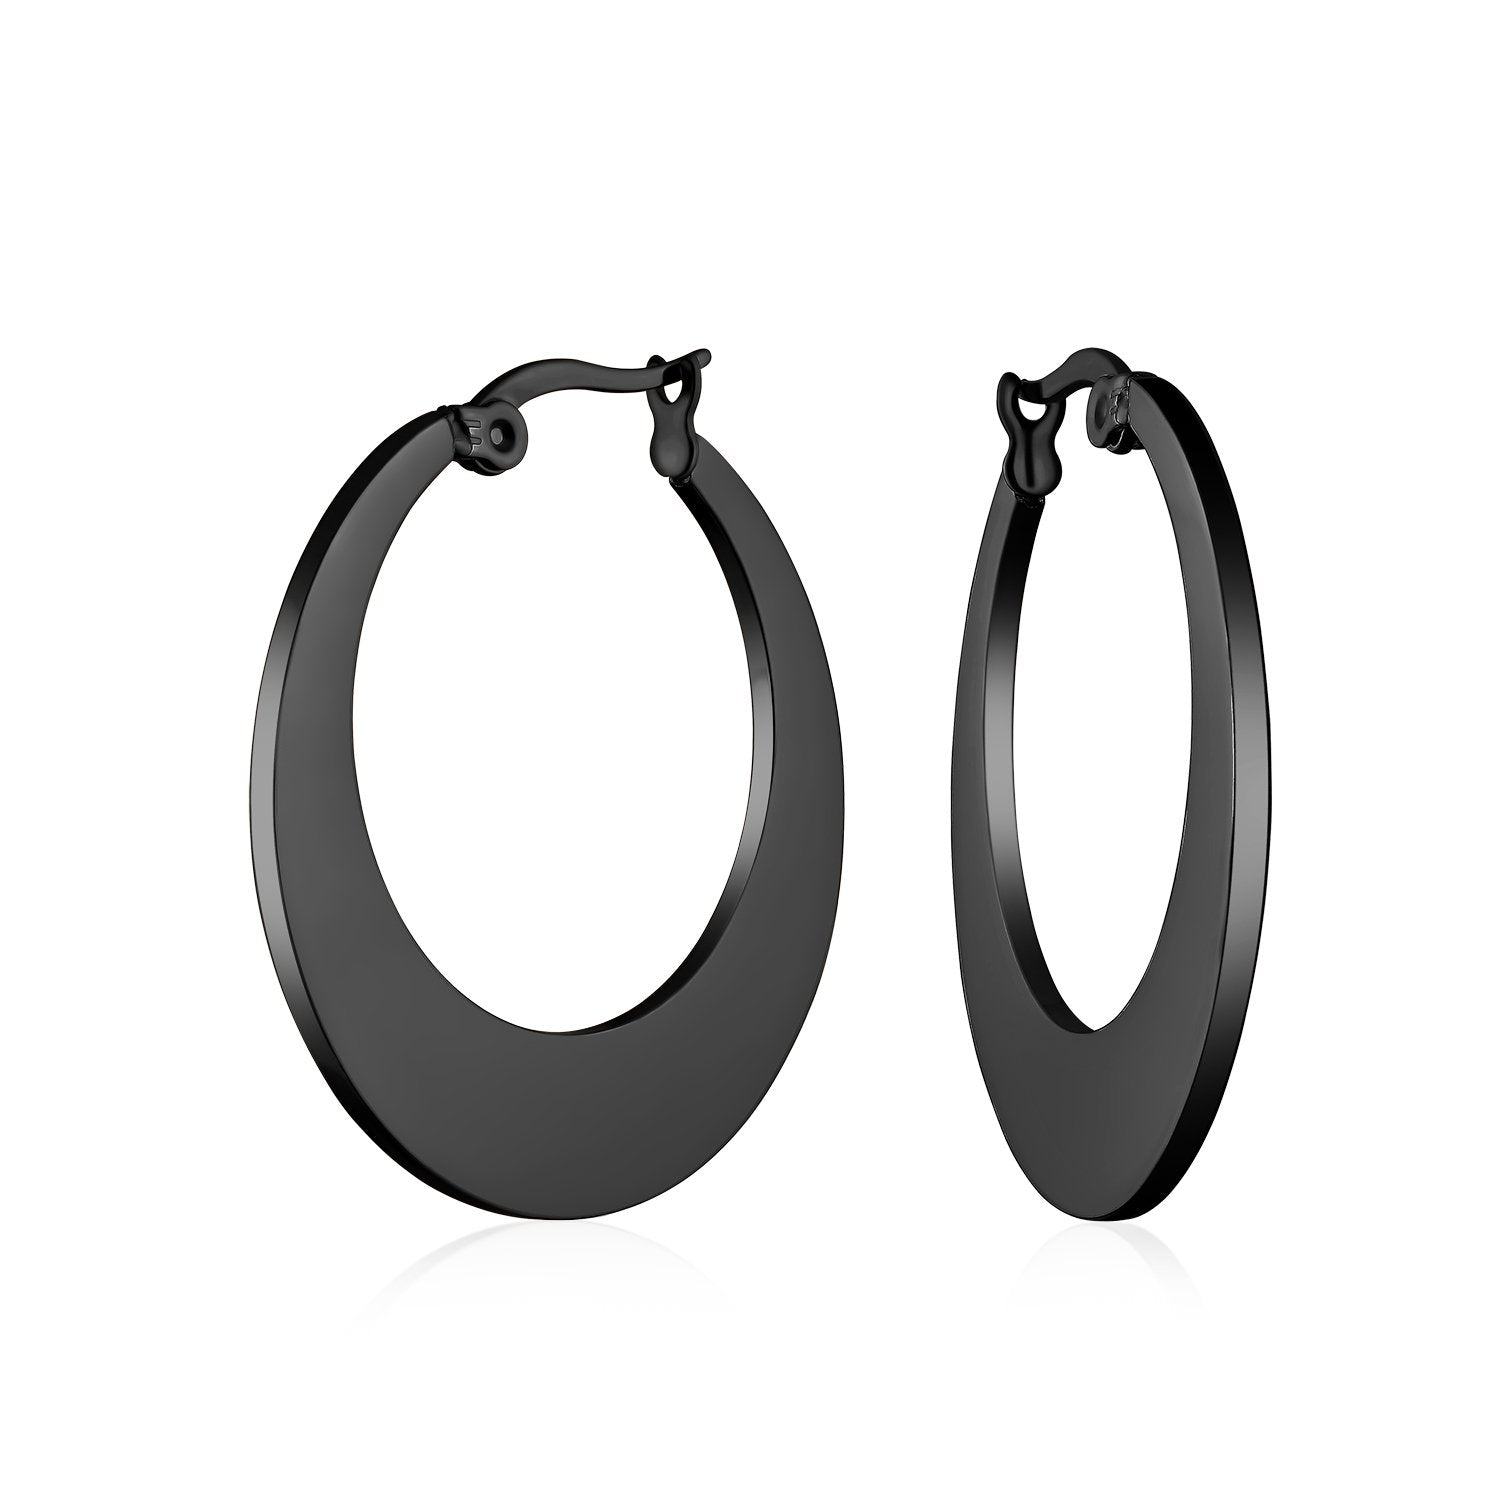 Black Flat Oval Hoop Earrings Black IP Plated Stainless Steel - Joyeria Lady